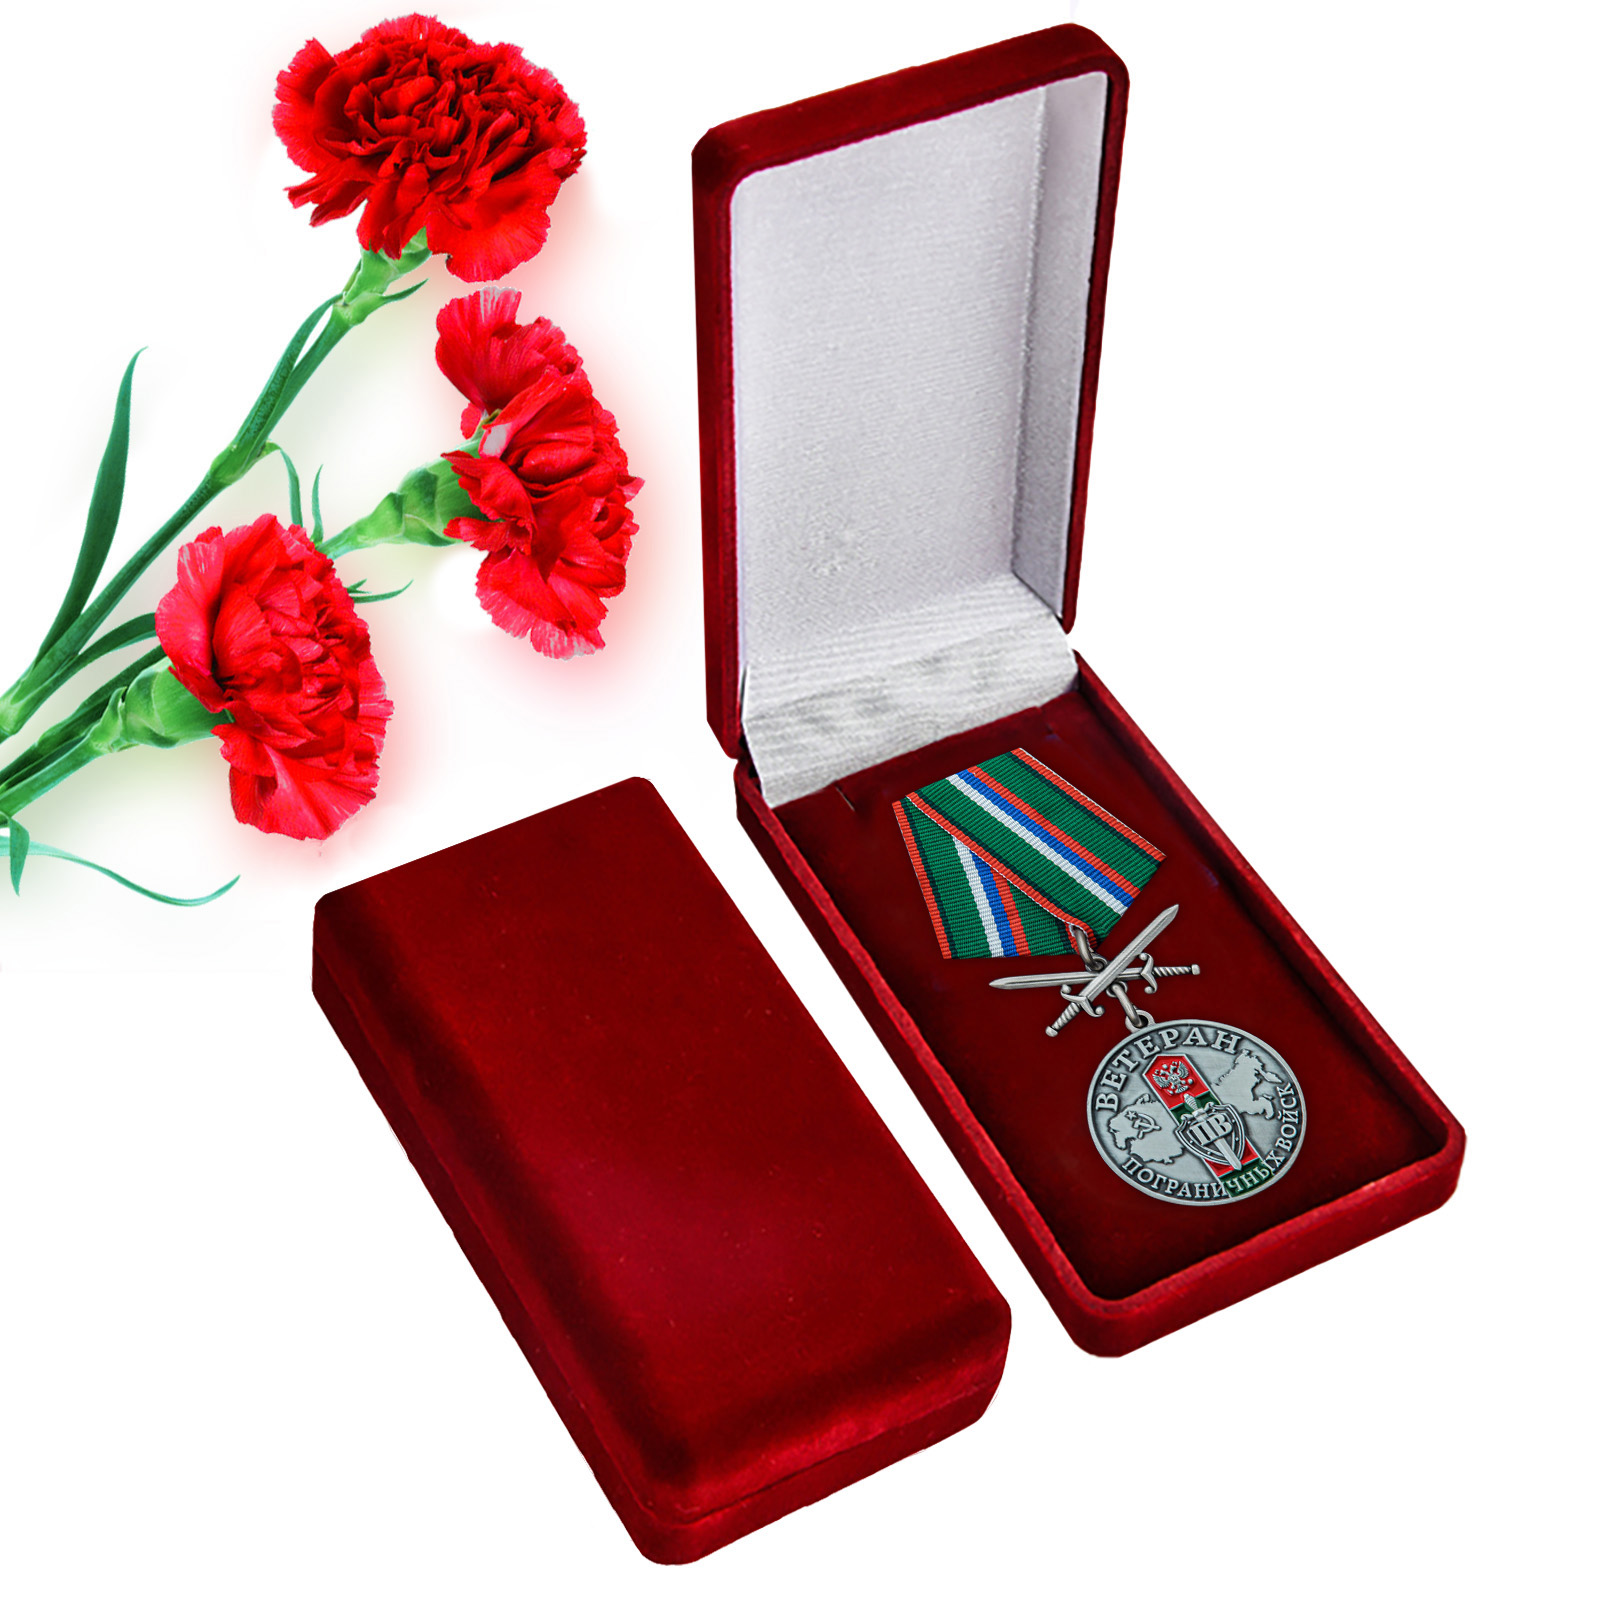 Купить медаль Ветеран Пограничных войск по экономичной цене